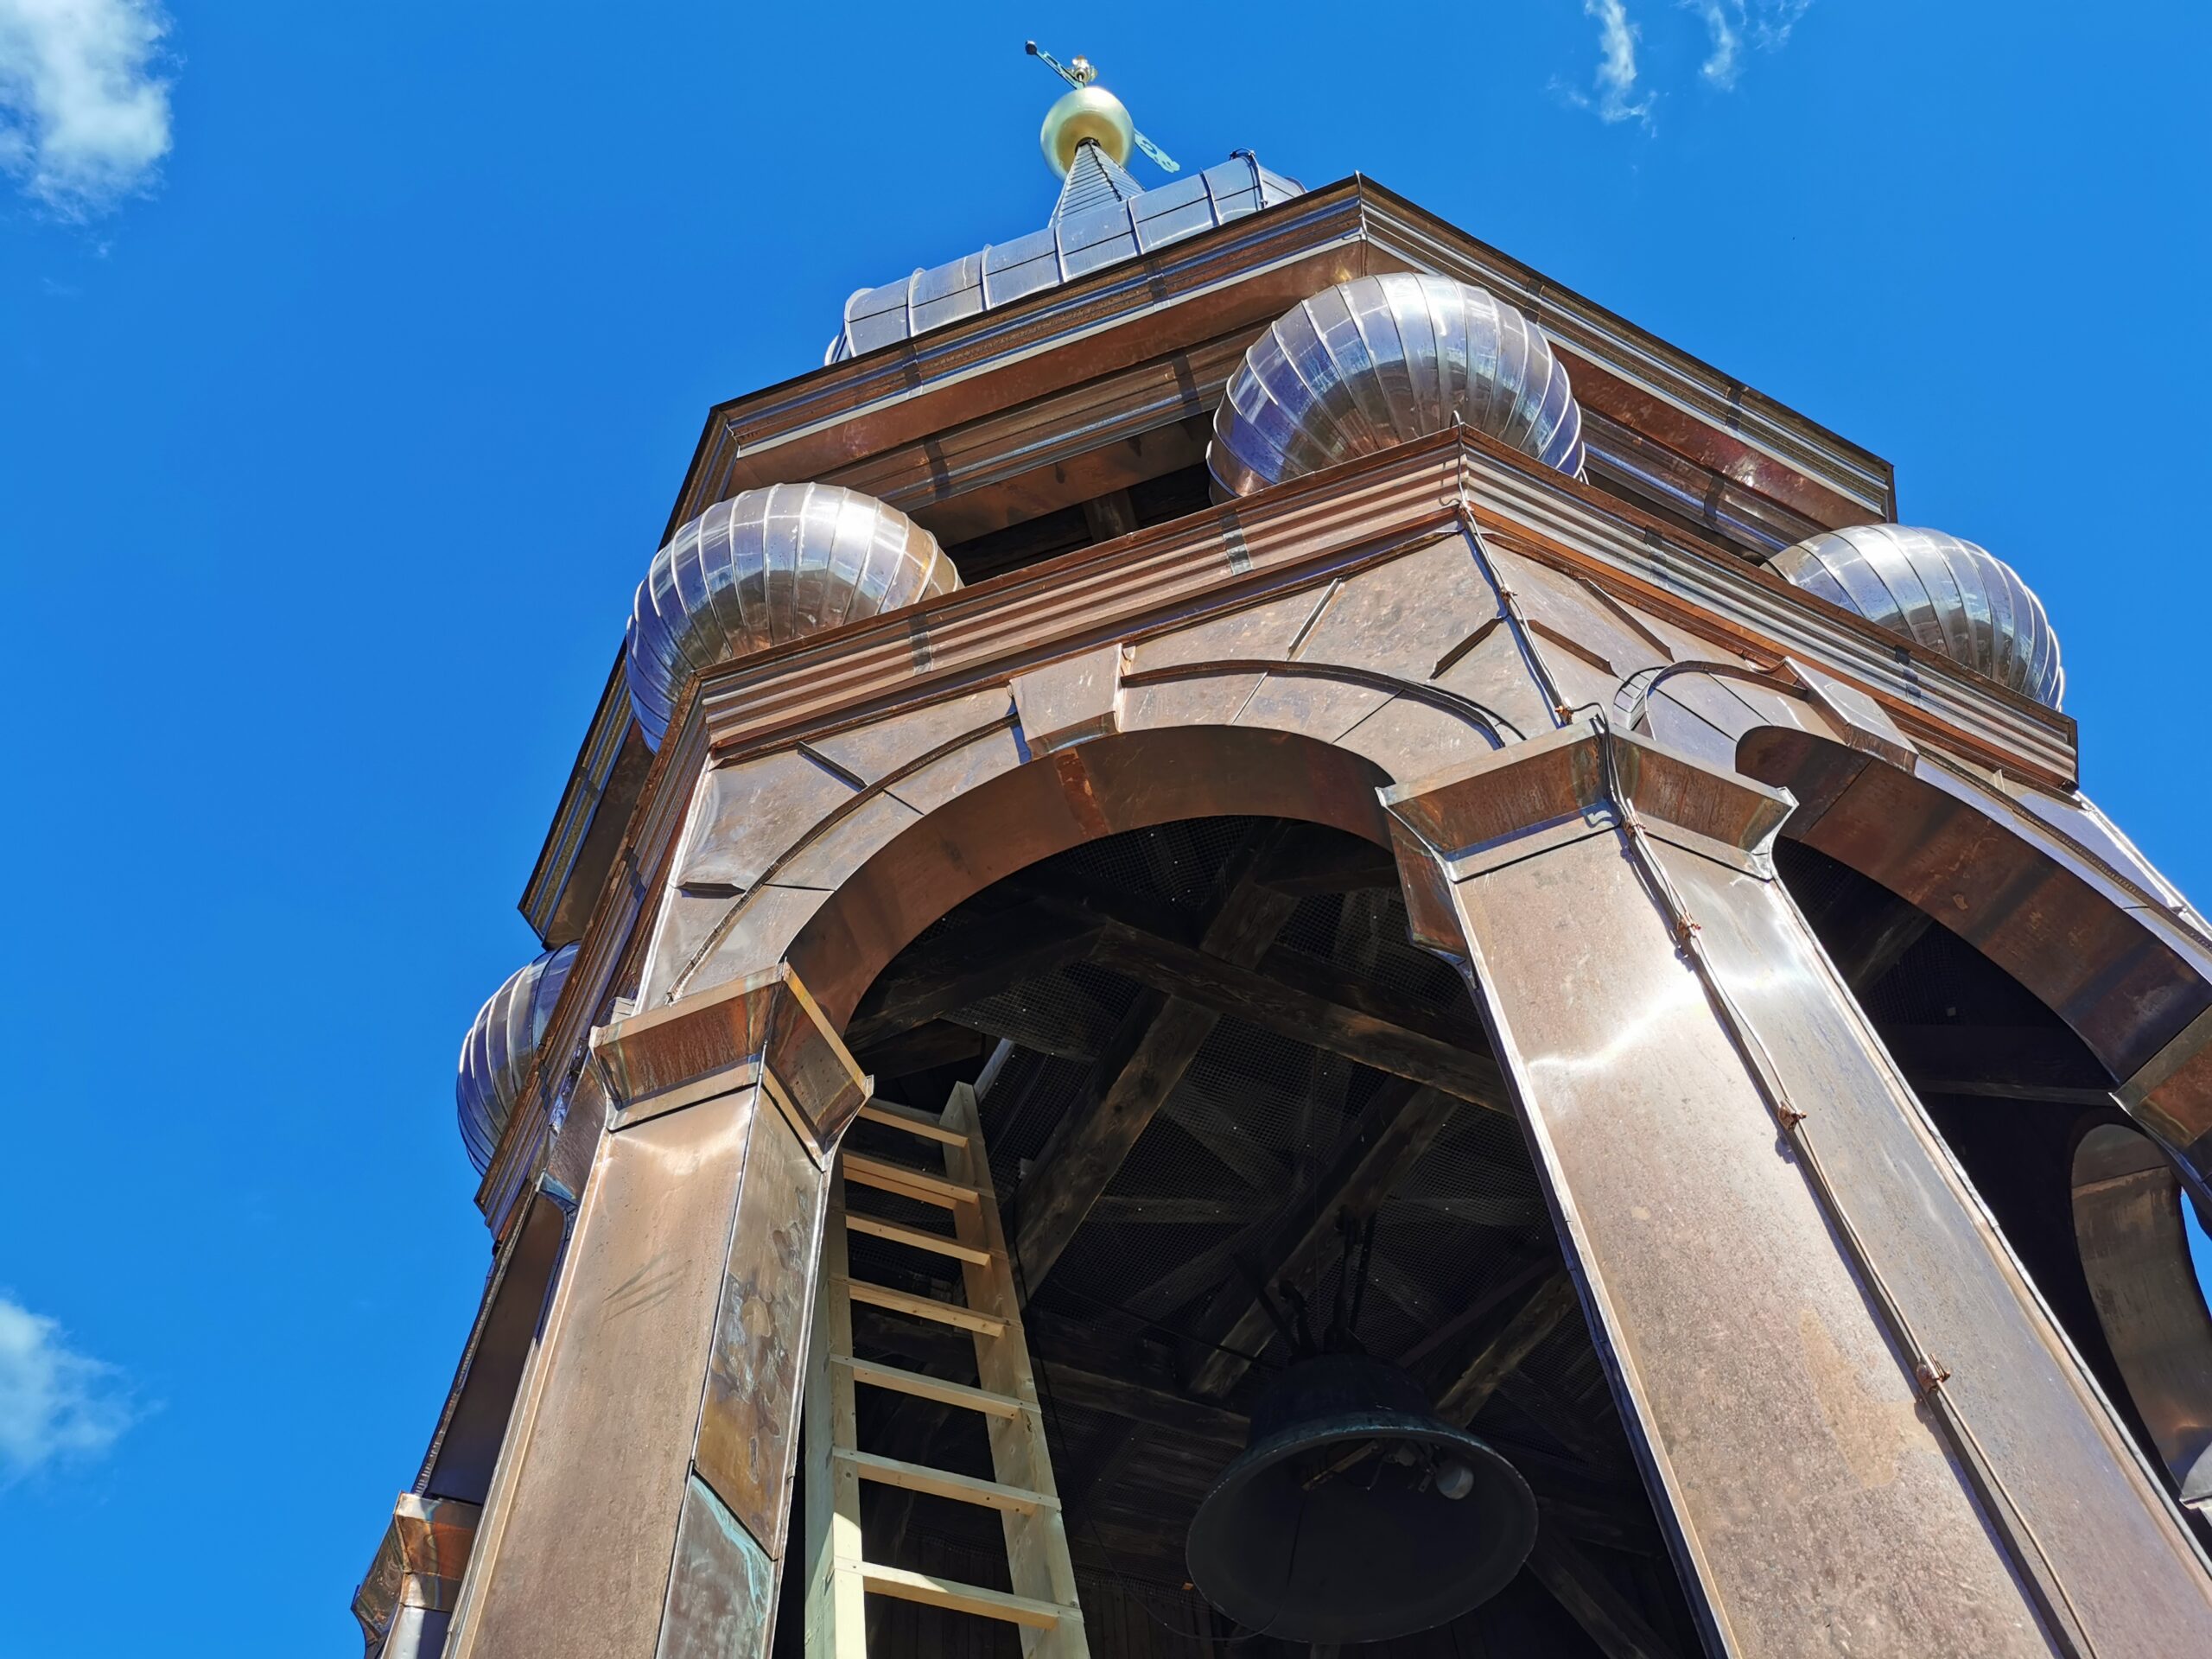 Tallinna toomkiriku vaskne tornikiiver on plekksepakunsti meistriklass